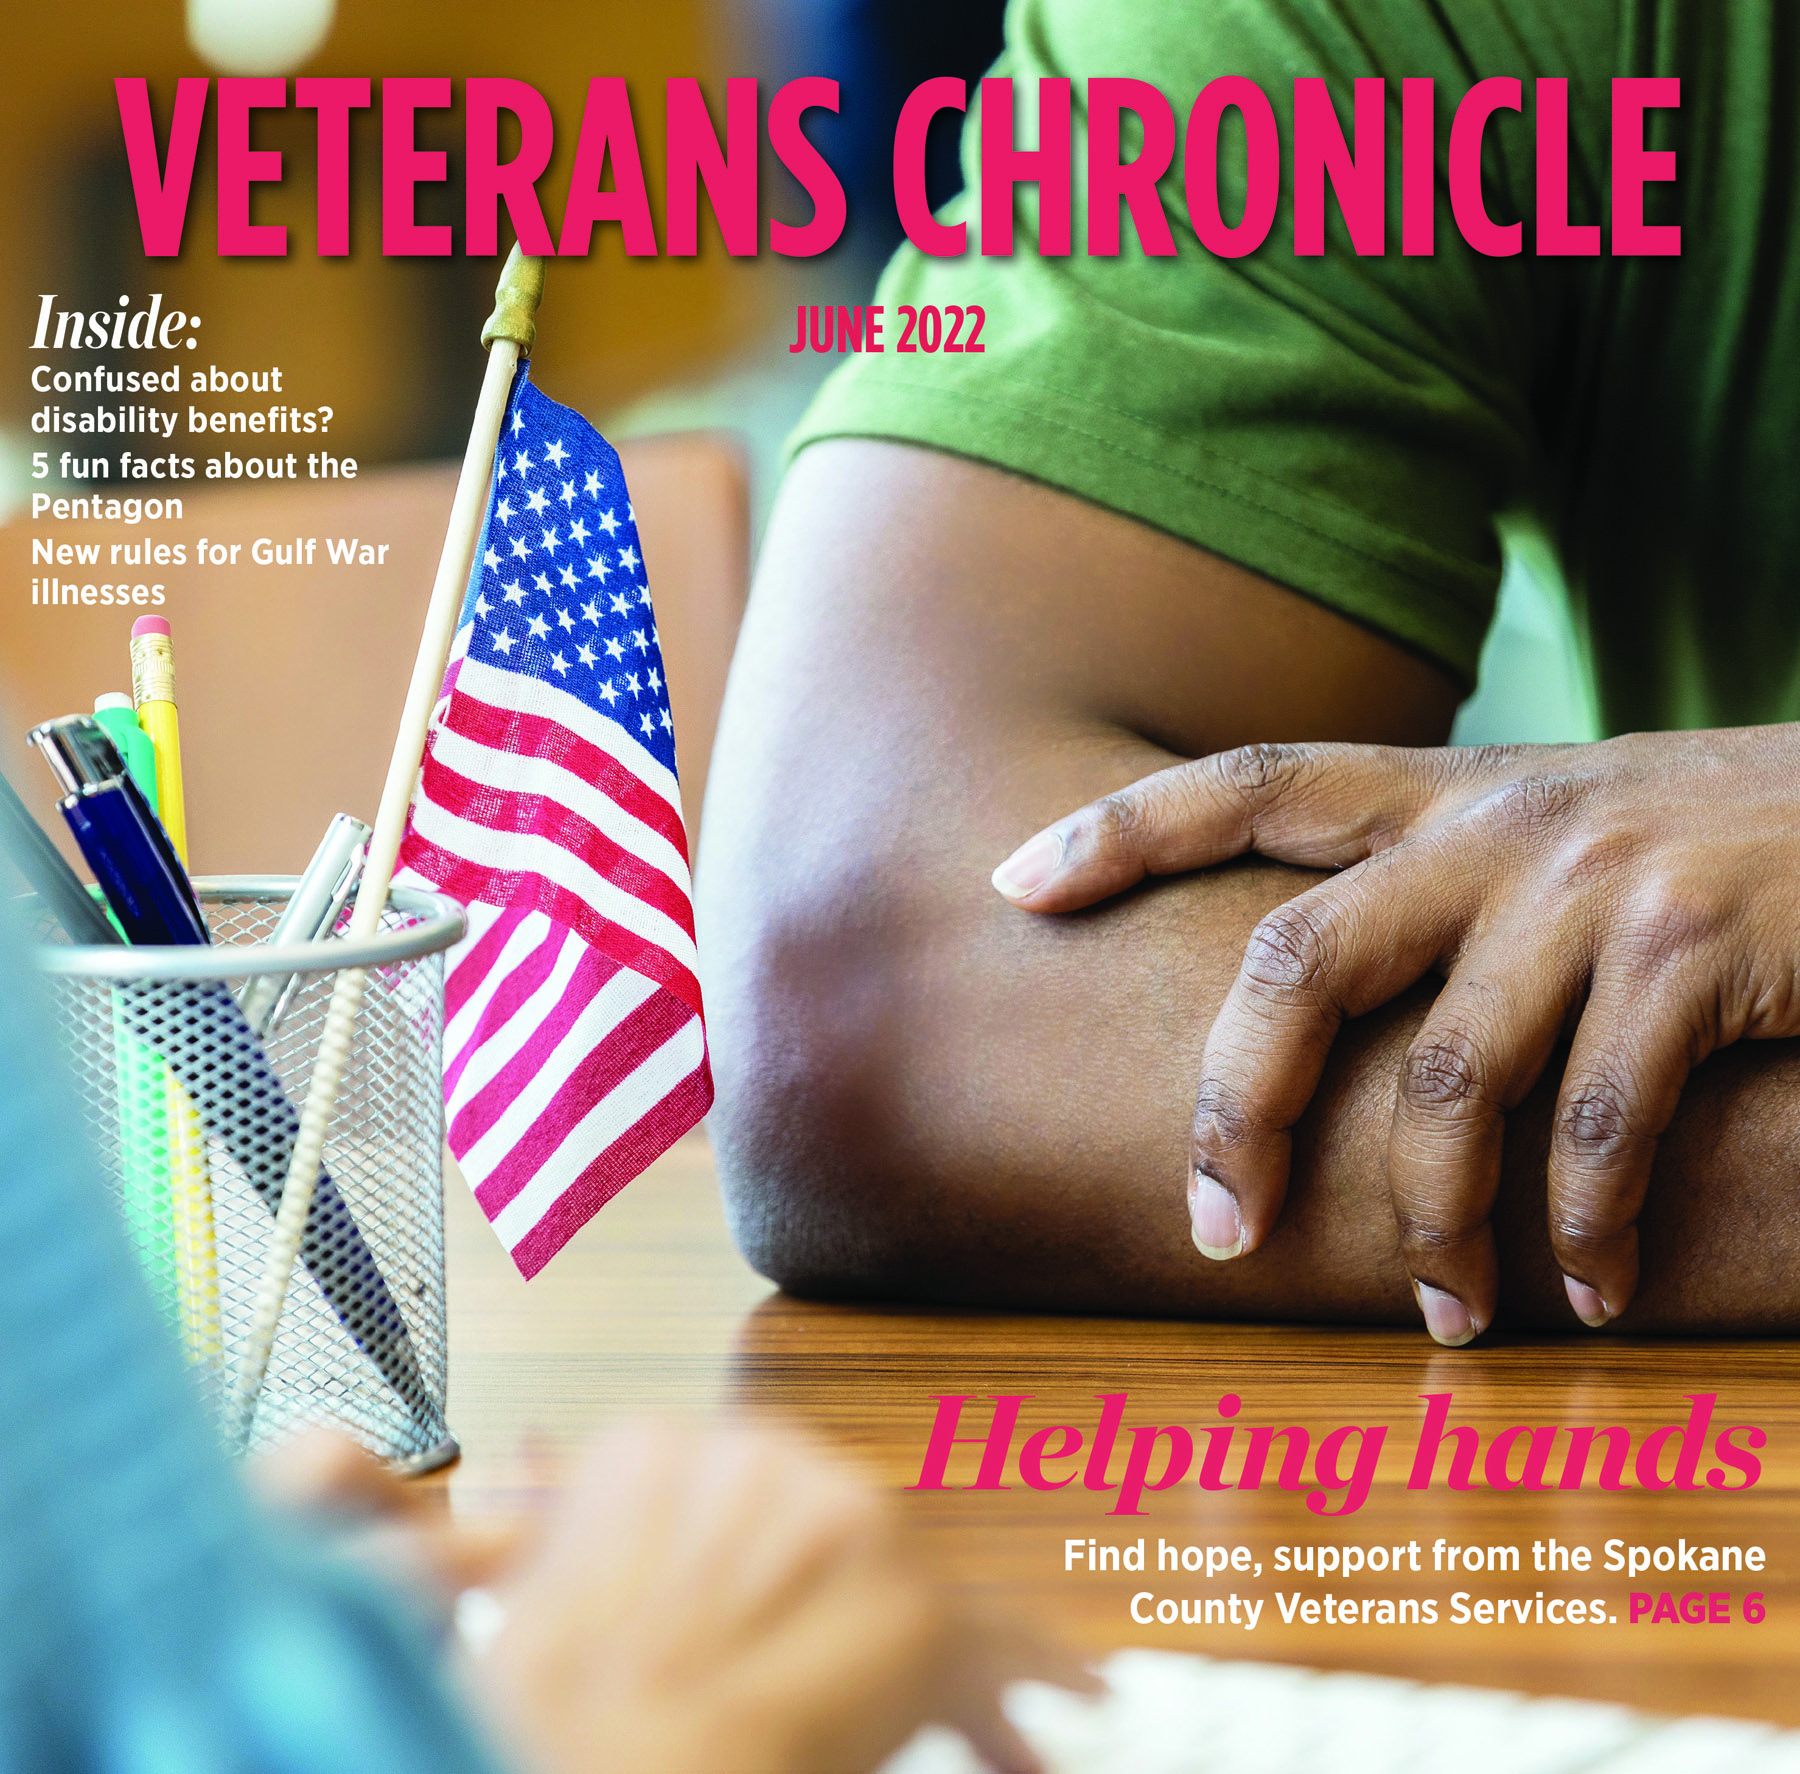 Veterans Chronicle June 2022